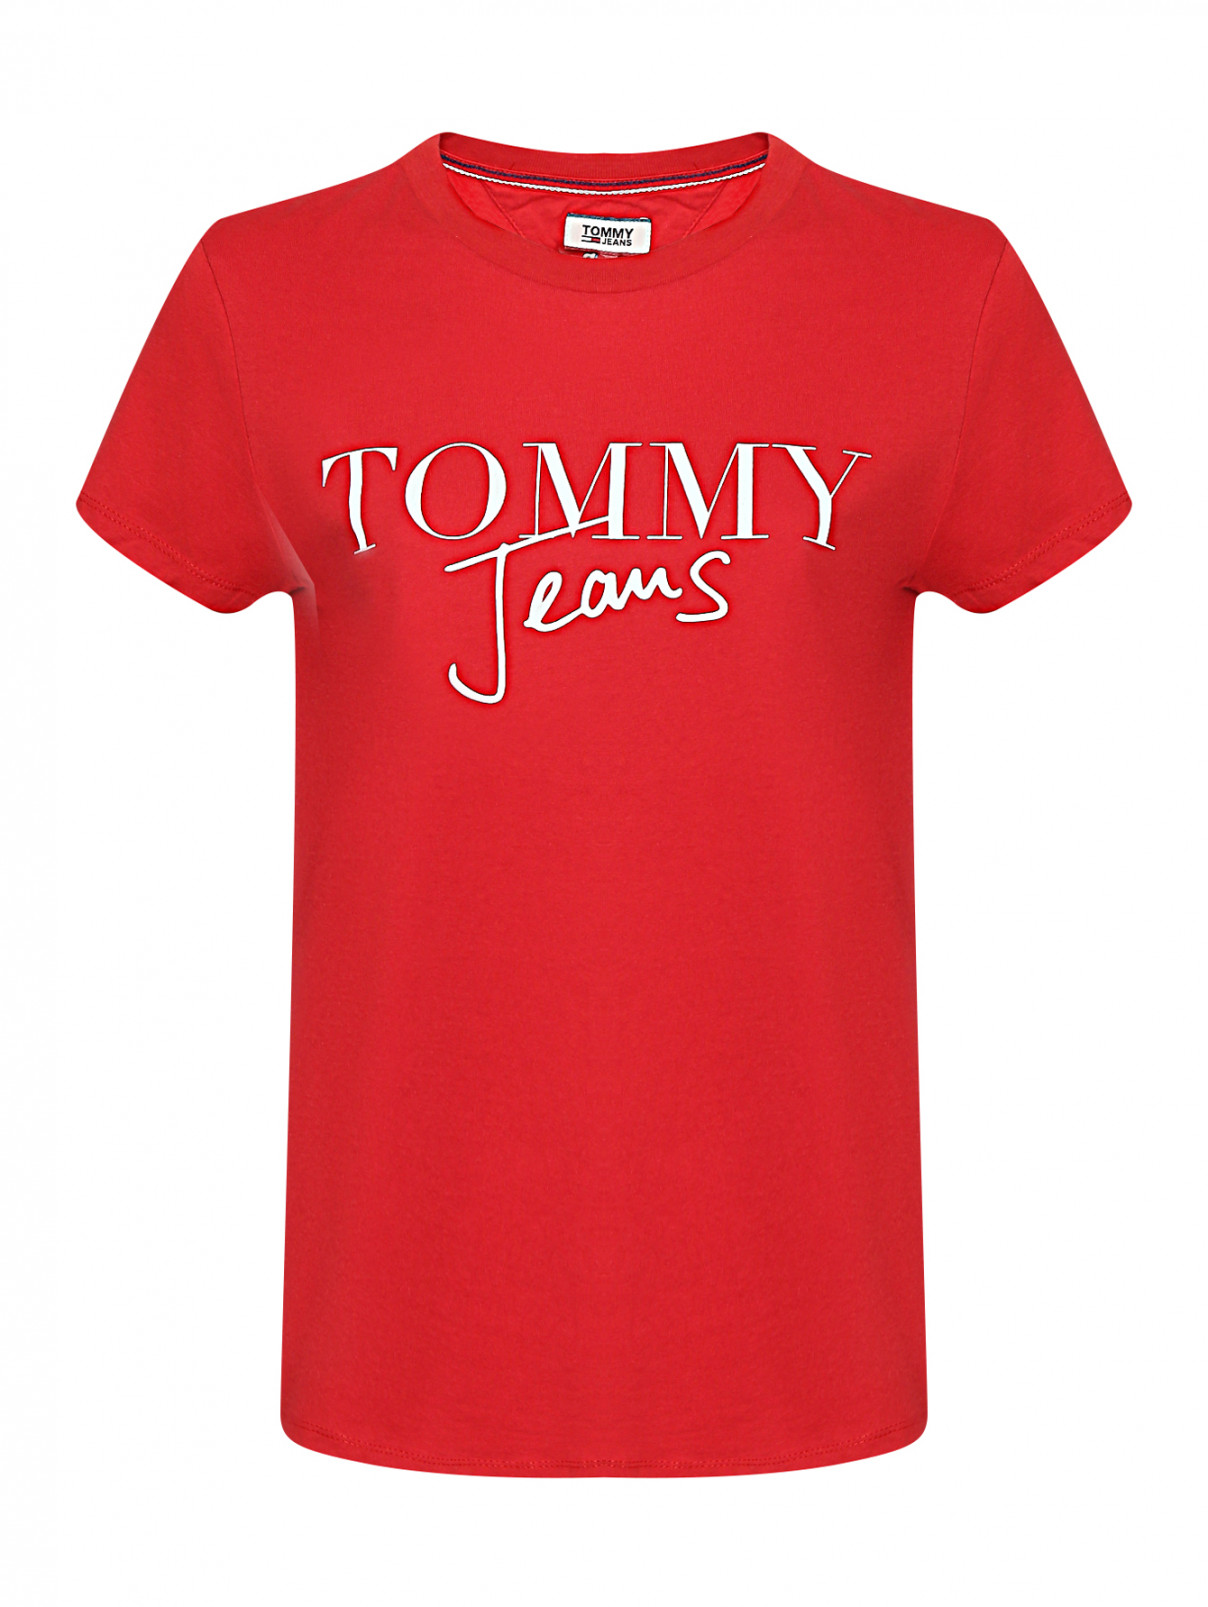 Футболка из хлопка с принтом Tommy Jeans  –  Общий вид  – Цвет:  Красный